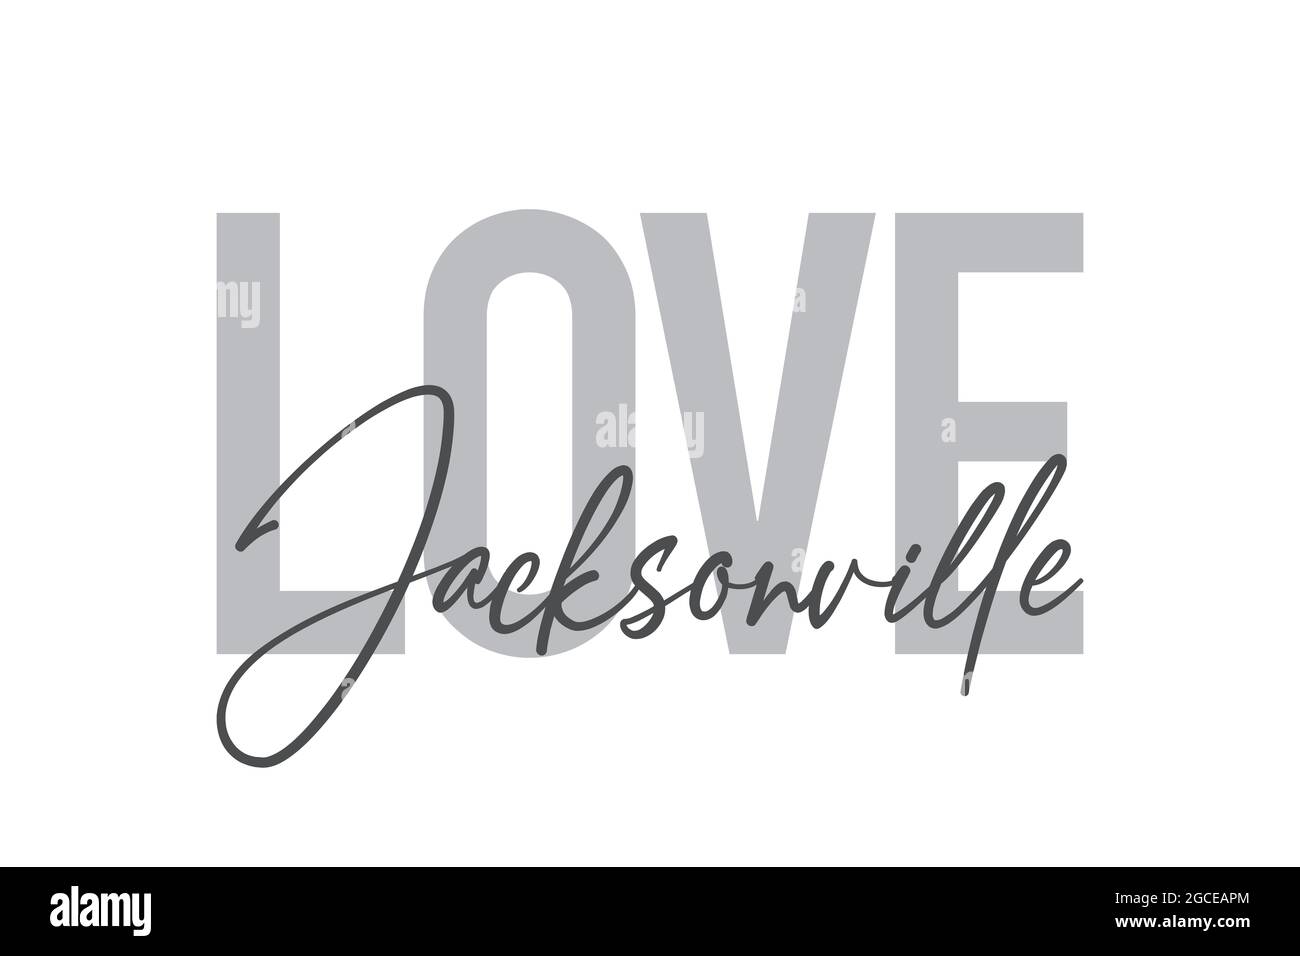 Design tipografico moderno, semplice e minimale di un detto 'Love Jacksonville' in toni di grigio. Grafica vettoriale cool, urbana, trendy e giocosa Foto Stock